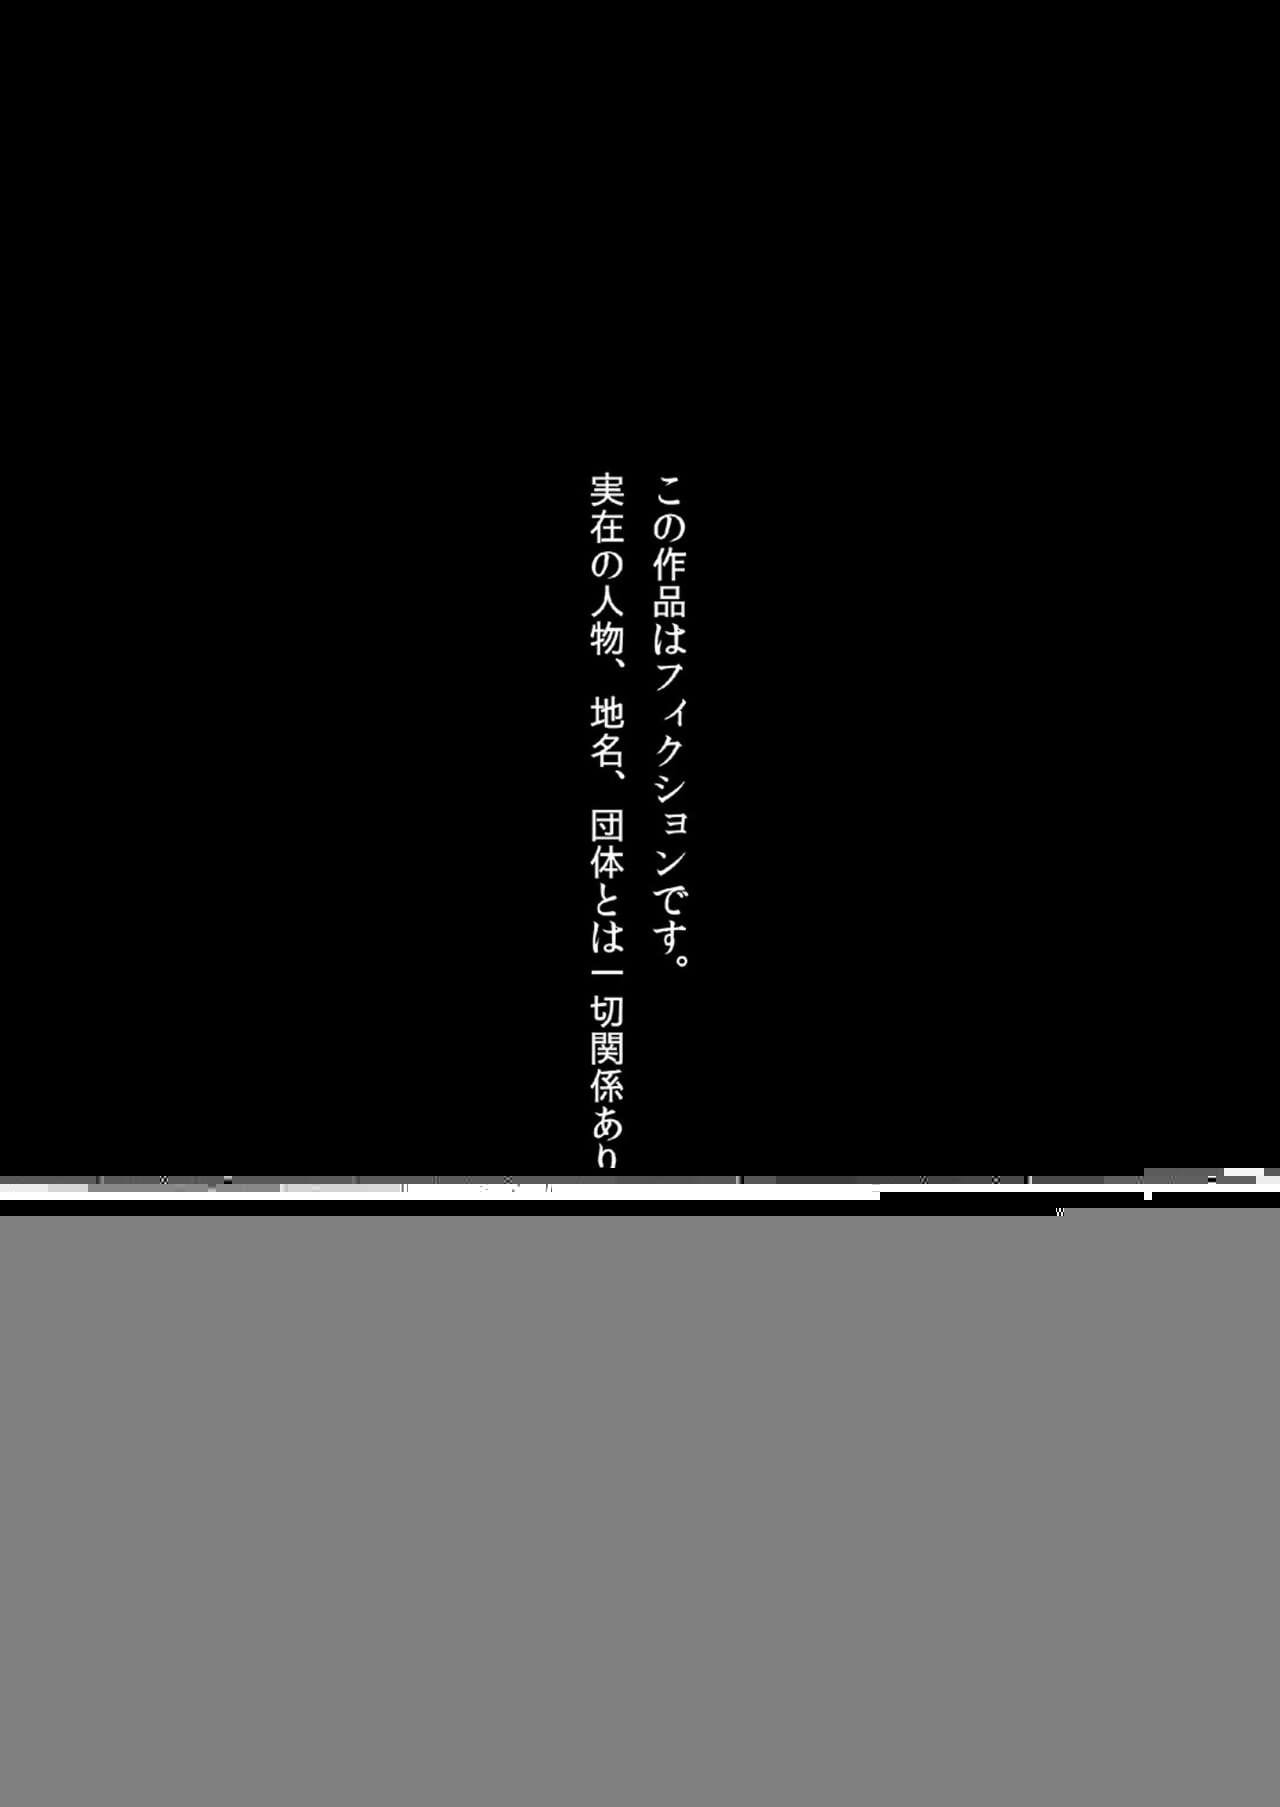 COMIC1☆13 Nikumaki-Bacon Nikujuuhachi Inu Tsuwara Nishiki Emaki・Kujira no Inanaki -Joukan- Digital